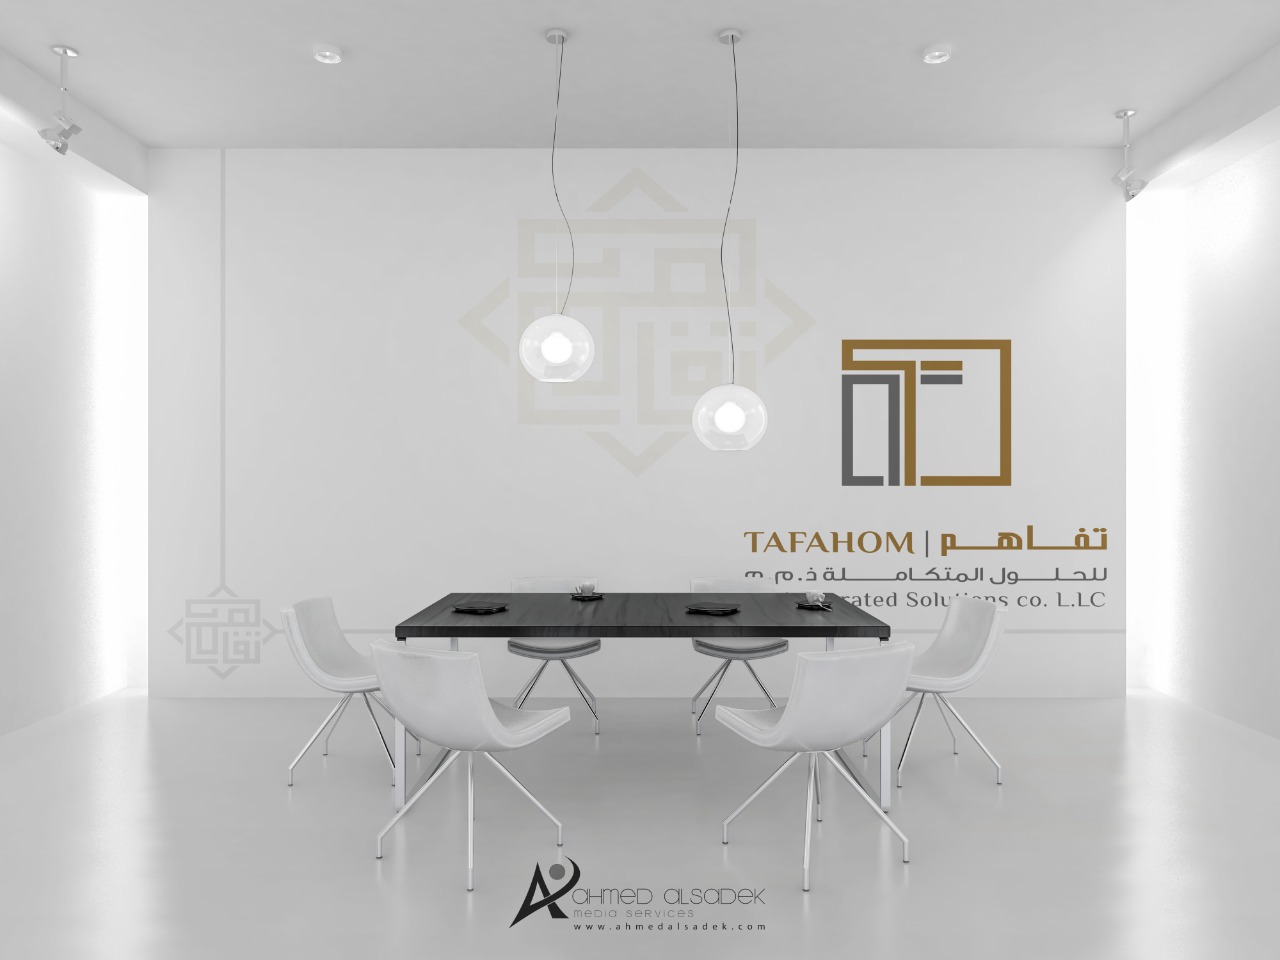 تصميم هوية شركة تفاهم للحلول المتكاملة في دبي الامارات 23